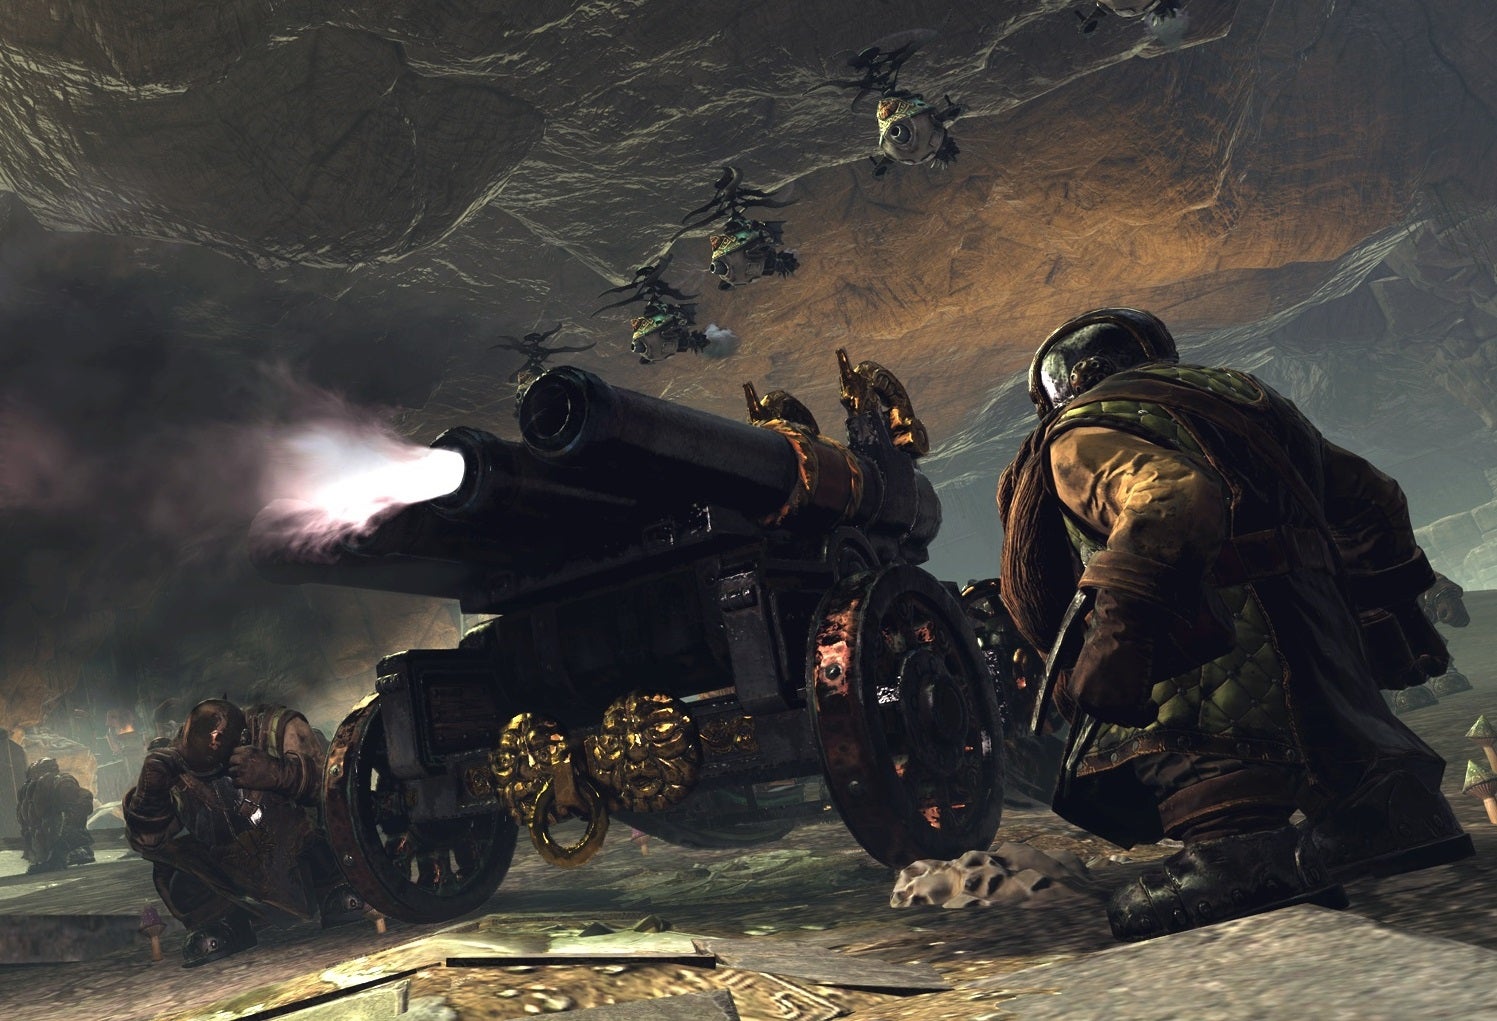 Obrazki dla Total War: Warhammer najszybciej sprzedającą się odsłoną cyklu